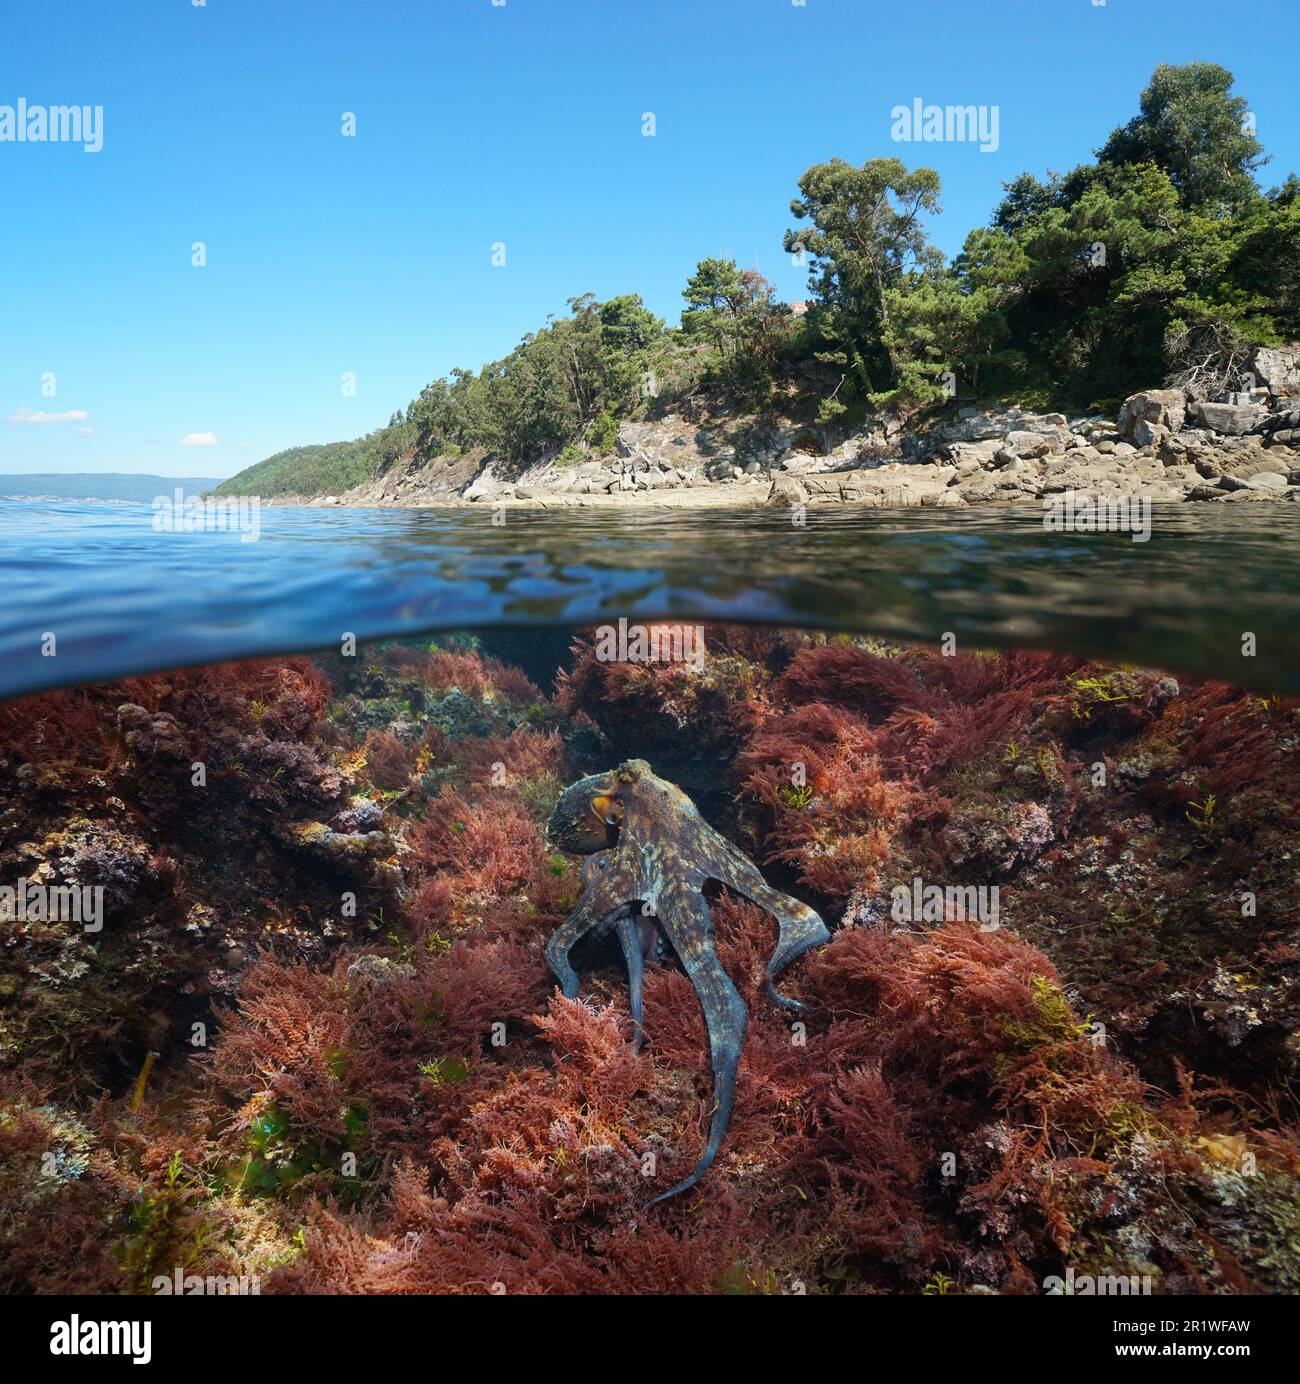 Côte atlantique avec un poulpe et des algues rouges sous l'eau dans l'océan, vue sur et sous la surface de l'eau, Espagne, Galice, Rias Baixas Banque D'Images